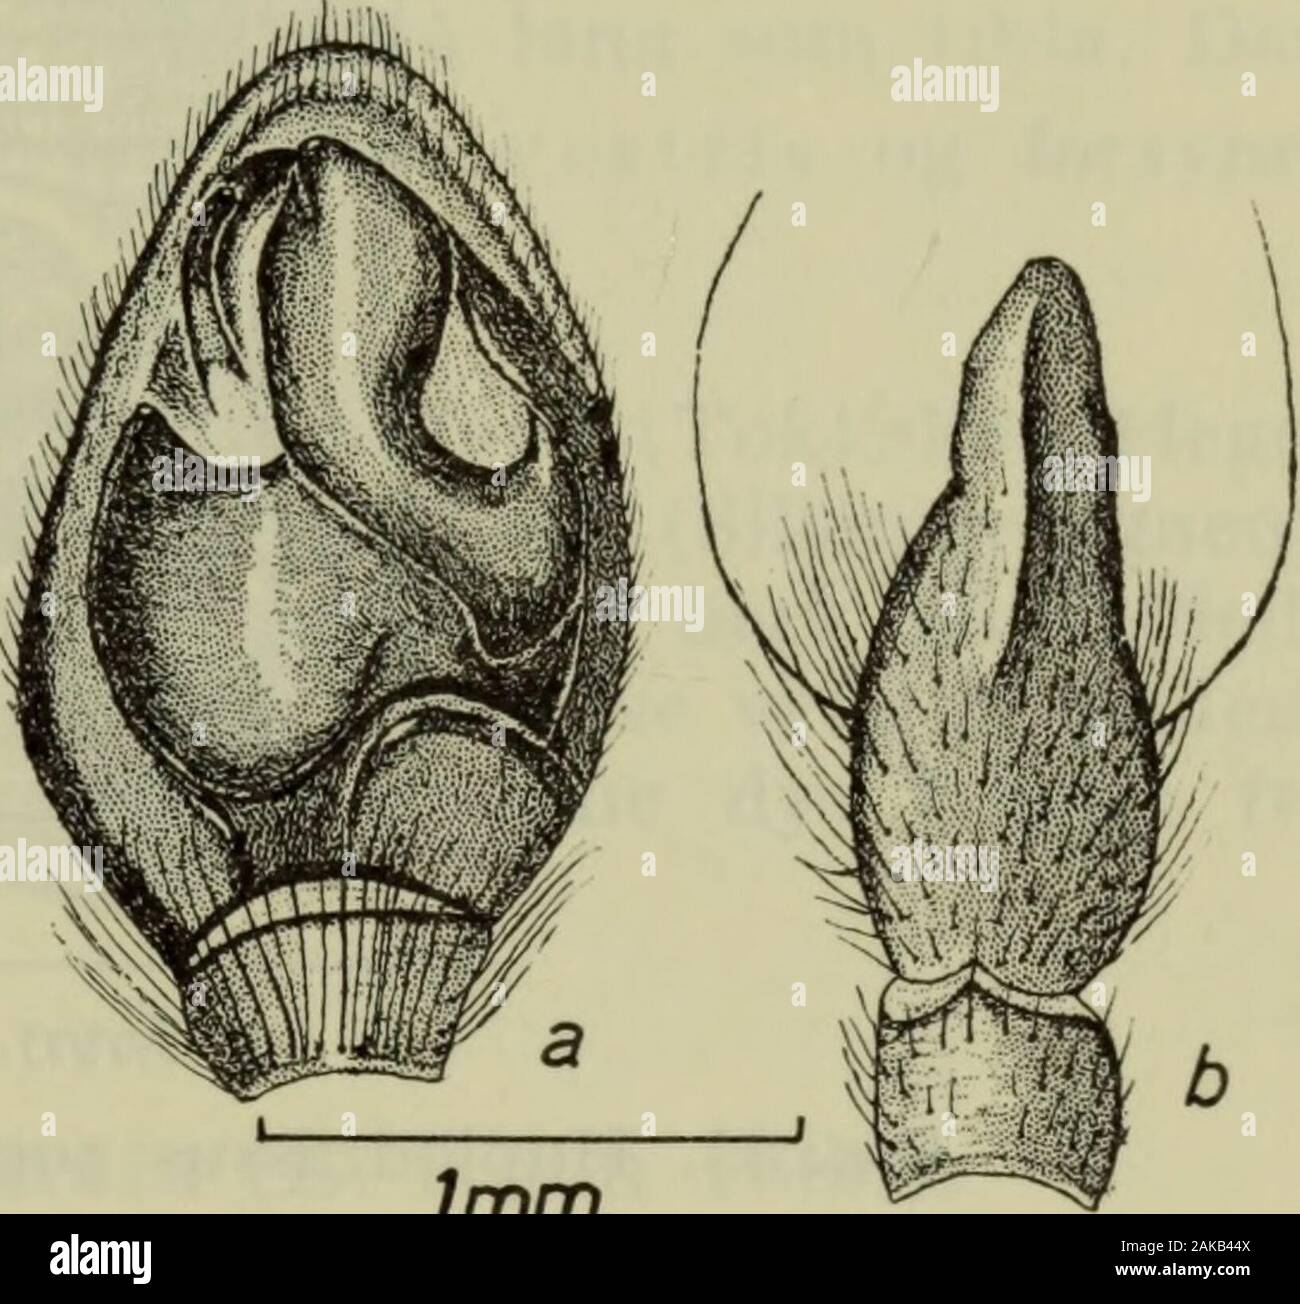 Danmarks fauna; illustrerede haandbøger over den danske dyreverden.. . 1mm. Fig. 83. Haplodrassussilvestris $: Epigynet.. Imm. Fig. 84. Haplodrassus silvestris cJ:Højre palpes tibia og tarse set ven-tralt (a), patella og tibia dorsalt (b). Farve og tornbevæbning som hos $. Palpens dorsale tibialapo-physe (fig. 84 b) er bred, lige så lang som selve tibia og ihele sin længde forsynet med en dorsal, svagt bugtet køl.På sin yderside har bulben en slank krog og modsat den enbred, bøjet konduktor, der dækker embolus (fig. 84 a). H. silvestris lever i skove, hvor den findes i det nedfaldneløv og unde Stock Photo